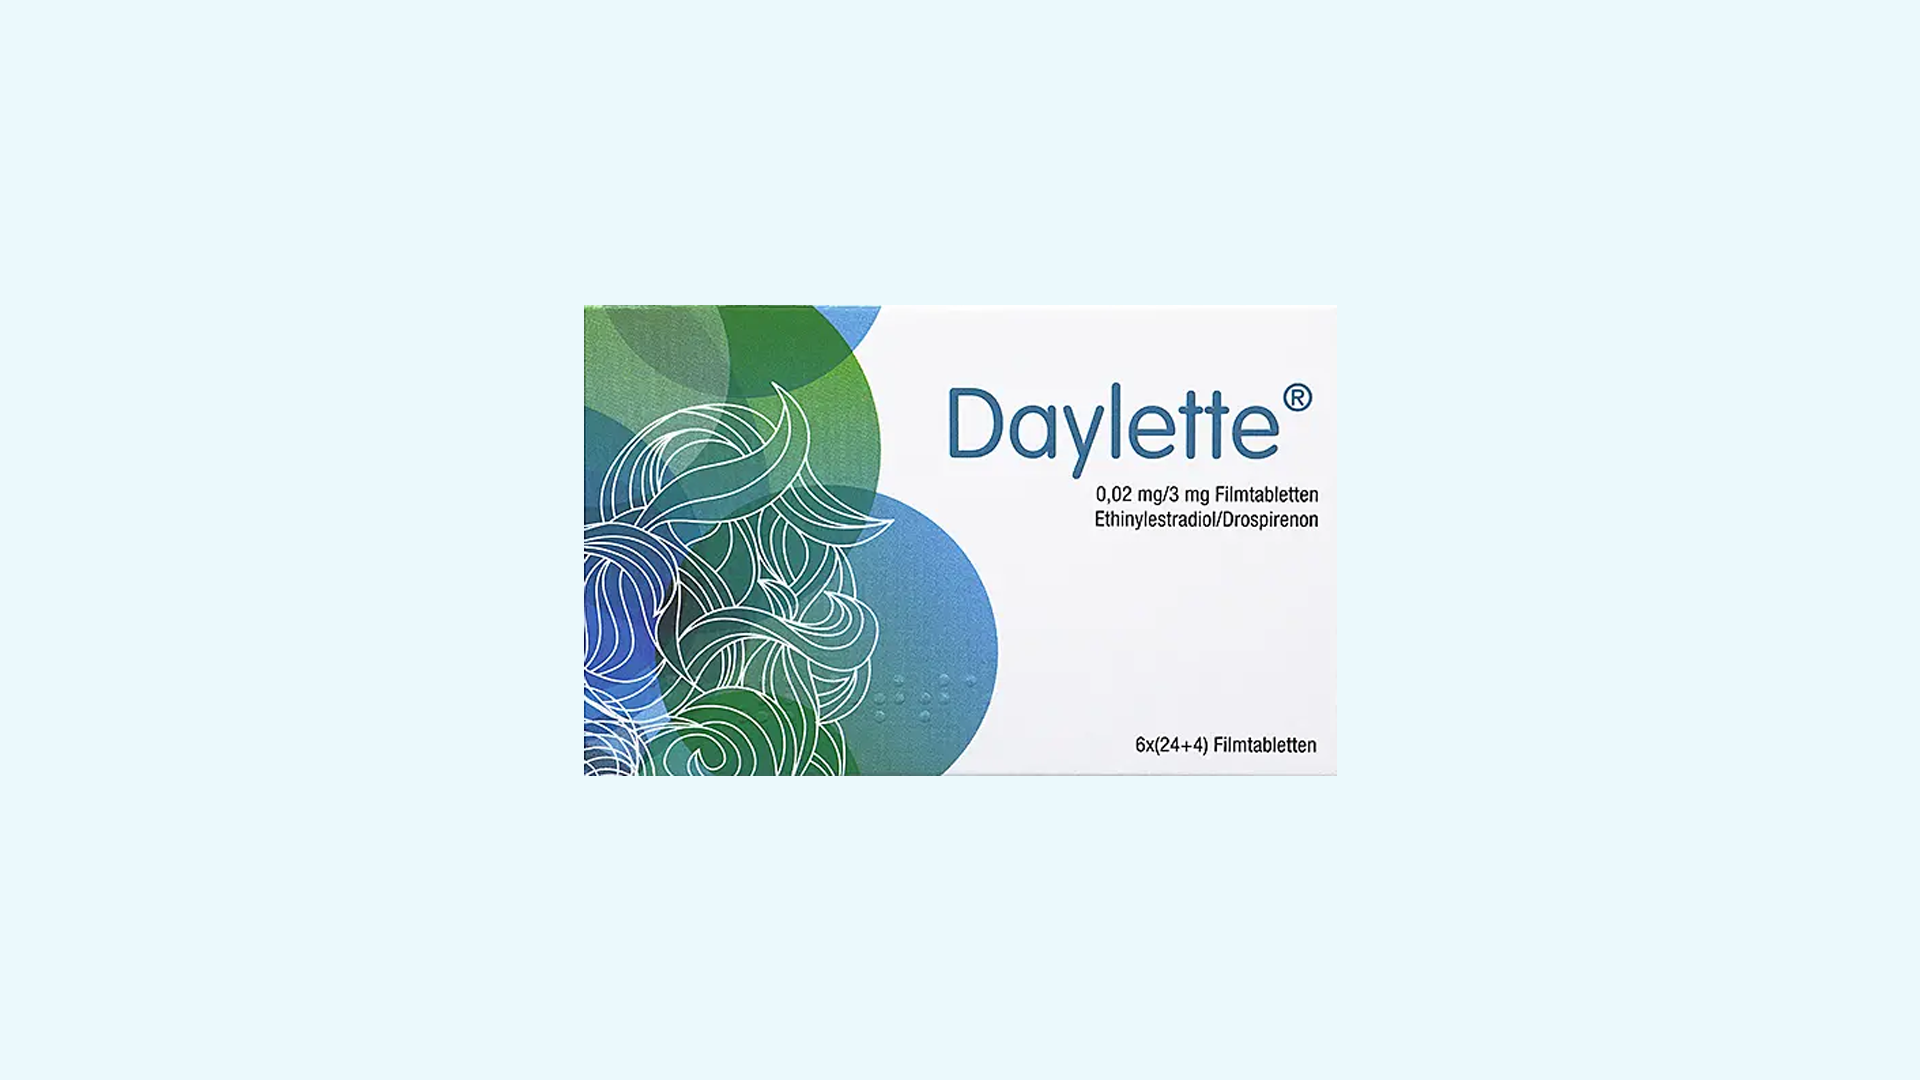 Daylette – informacje o leku  dawkowanie oraz przeciwwskazania